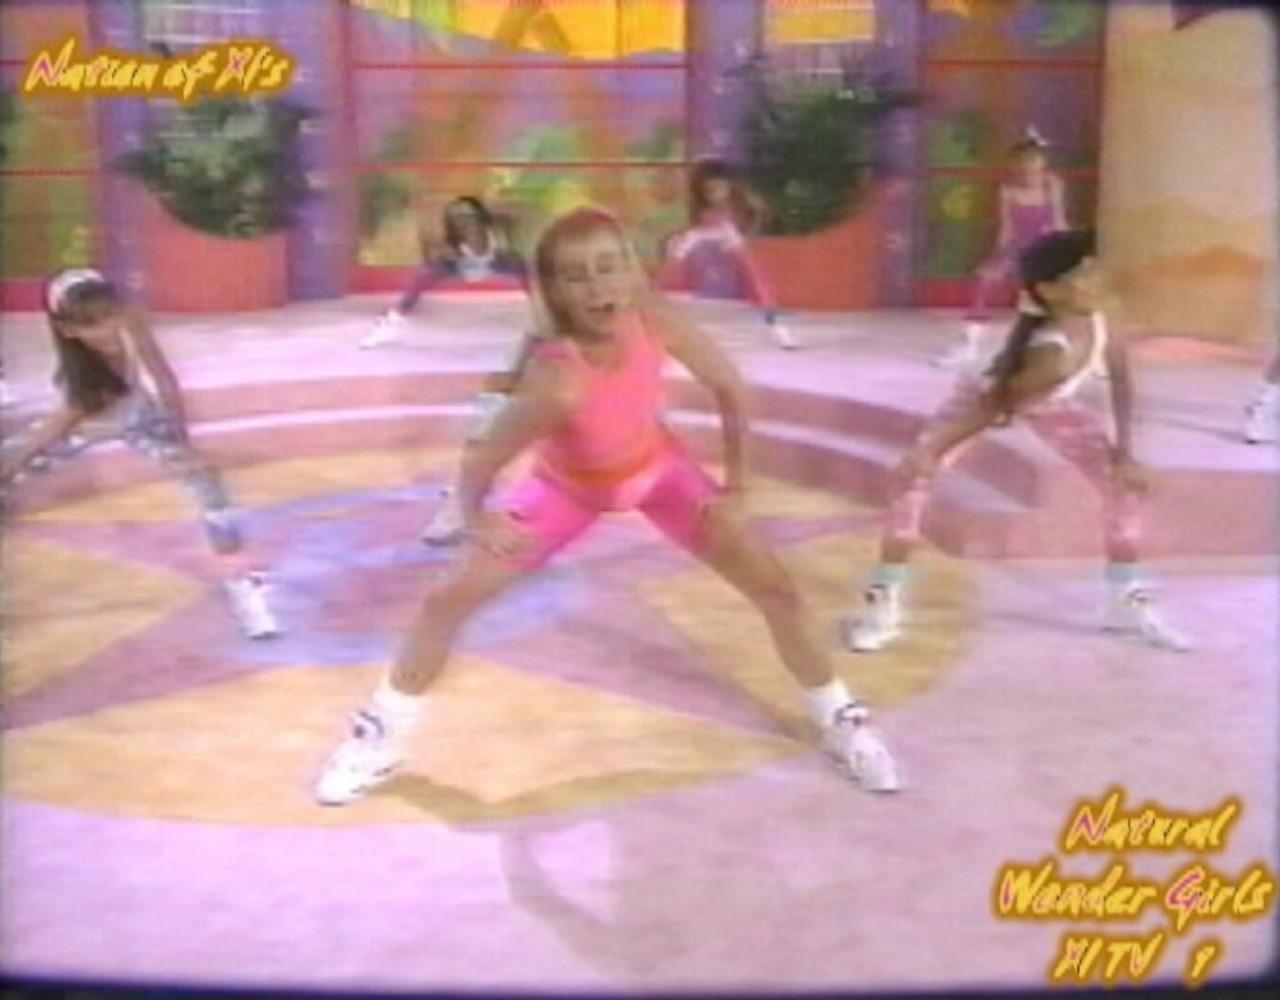 Natural Wonder Girls! Dance Workout! "Barbie Gets Nine Inch Nailed!" - Secrets of Esrever! 